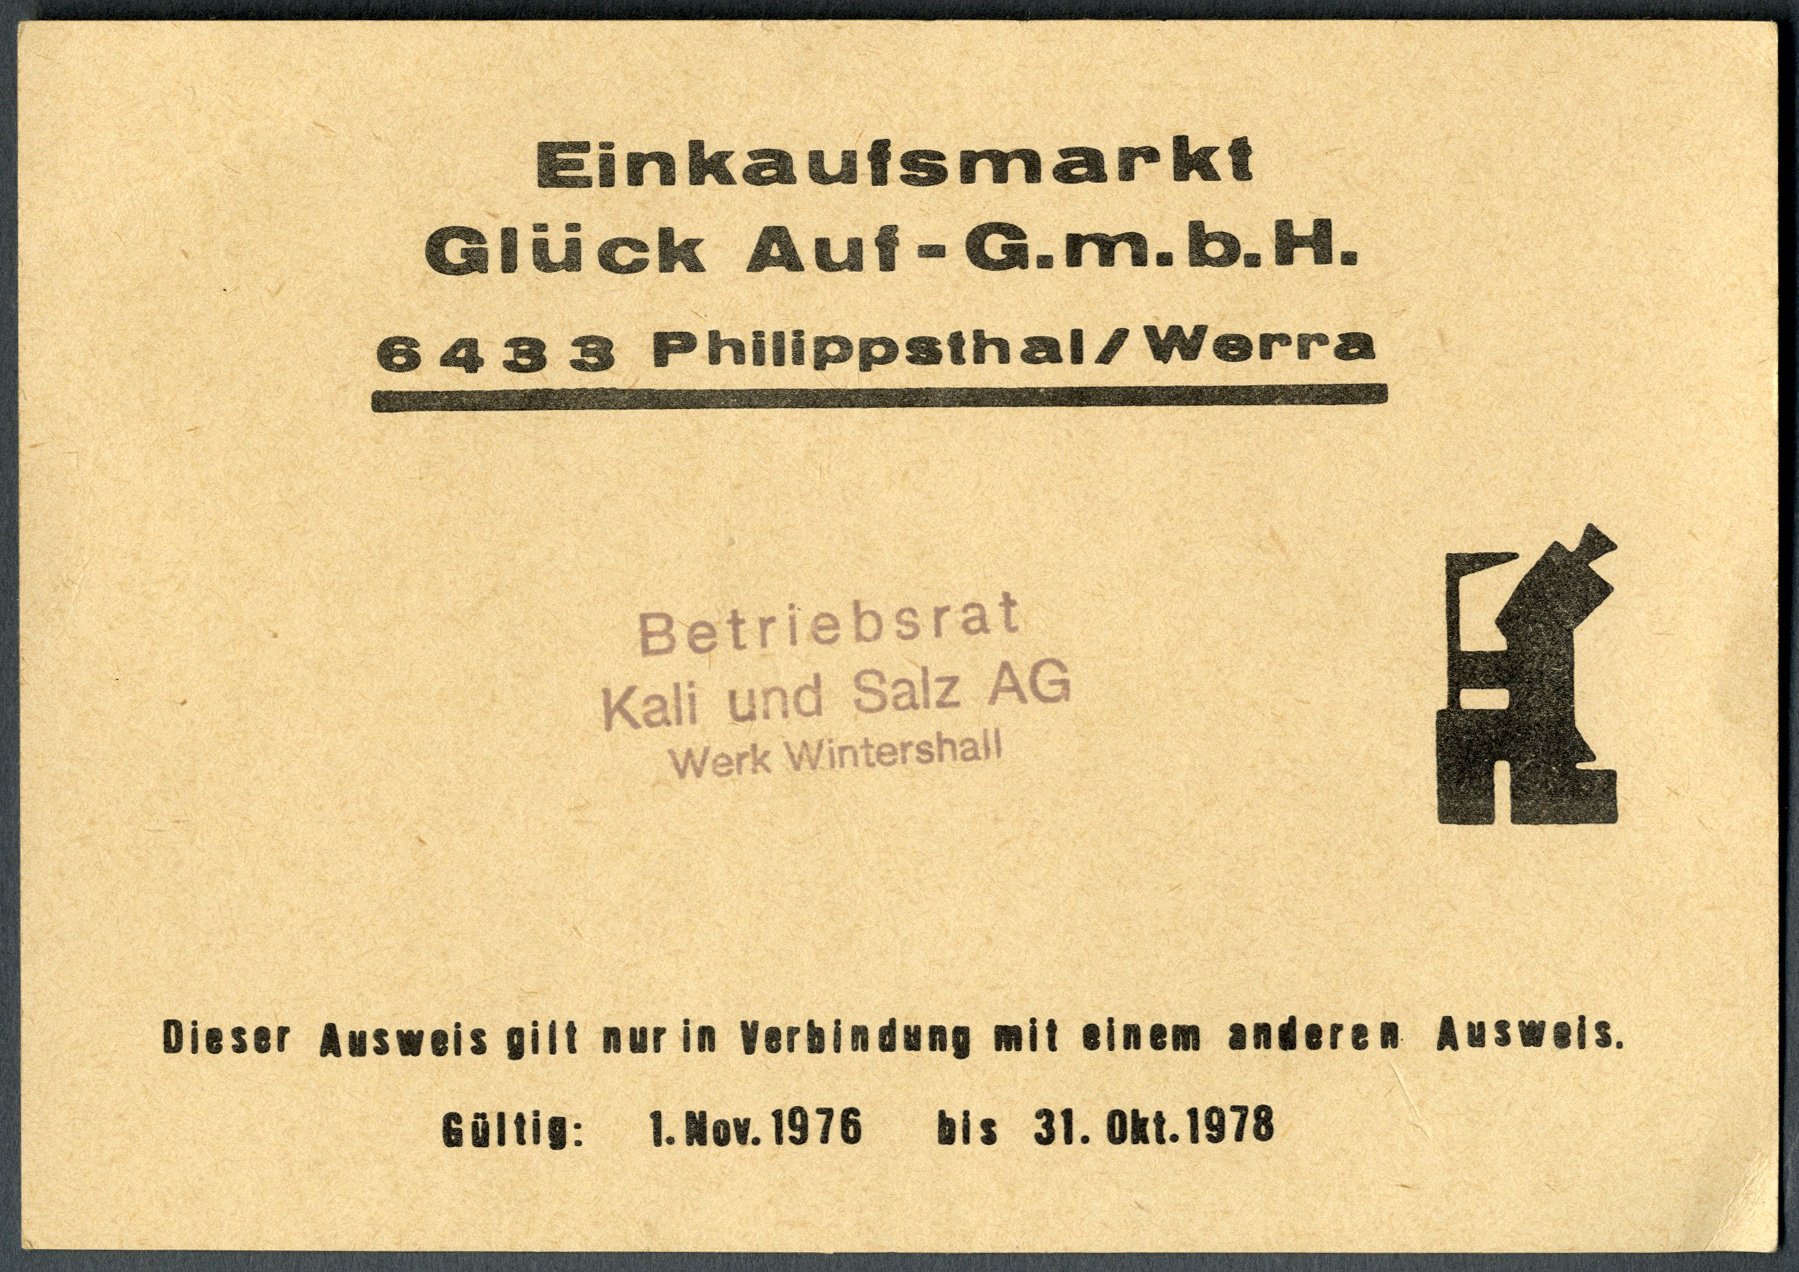 Ausweiskarte Einkaufsmarkt Glück Auf G.m.b.H. (Werra-Kalibergbau-Museum, Heringen/W. CC BY-NC-SA)